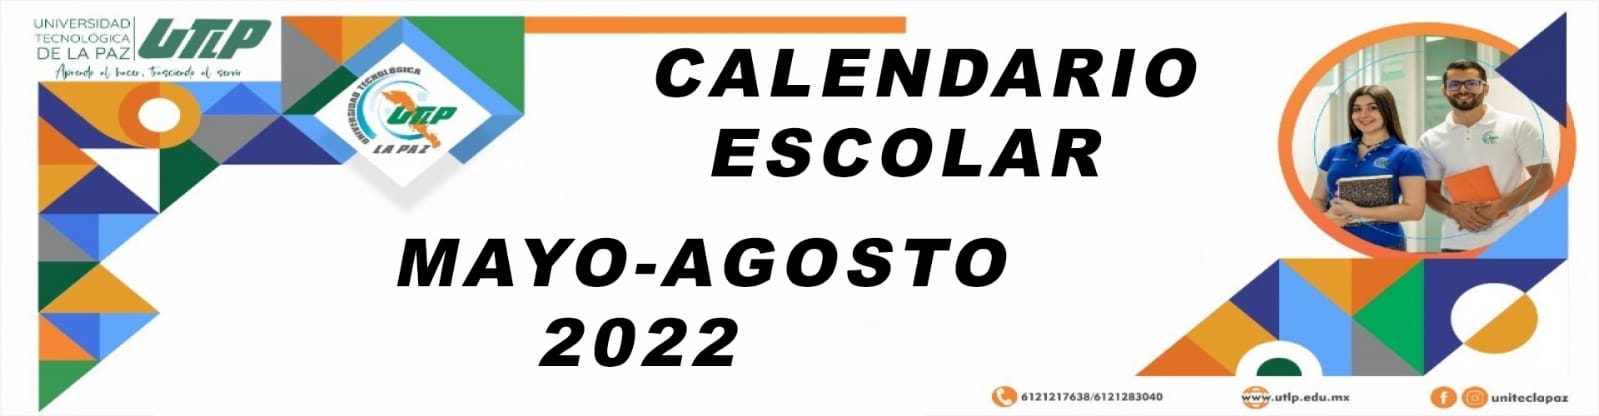 Calendario escolar MAYO-AGOSTO 2022